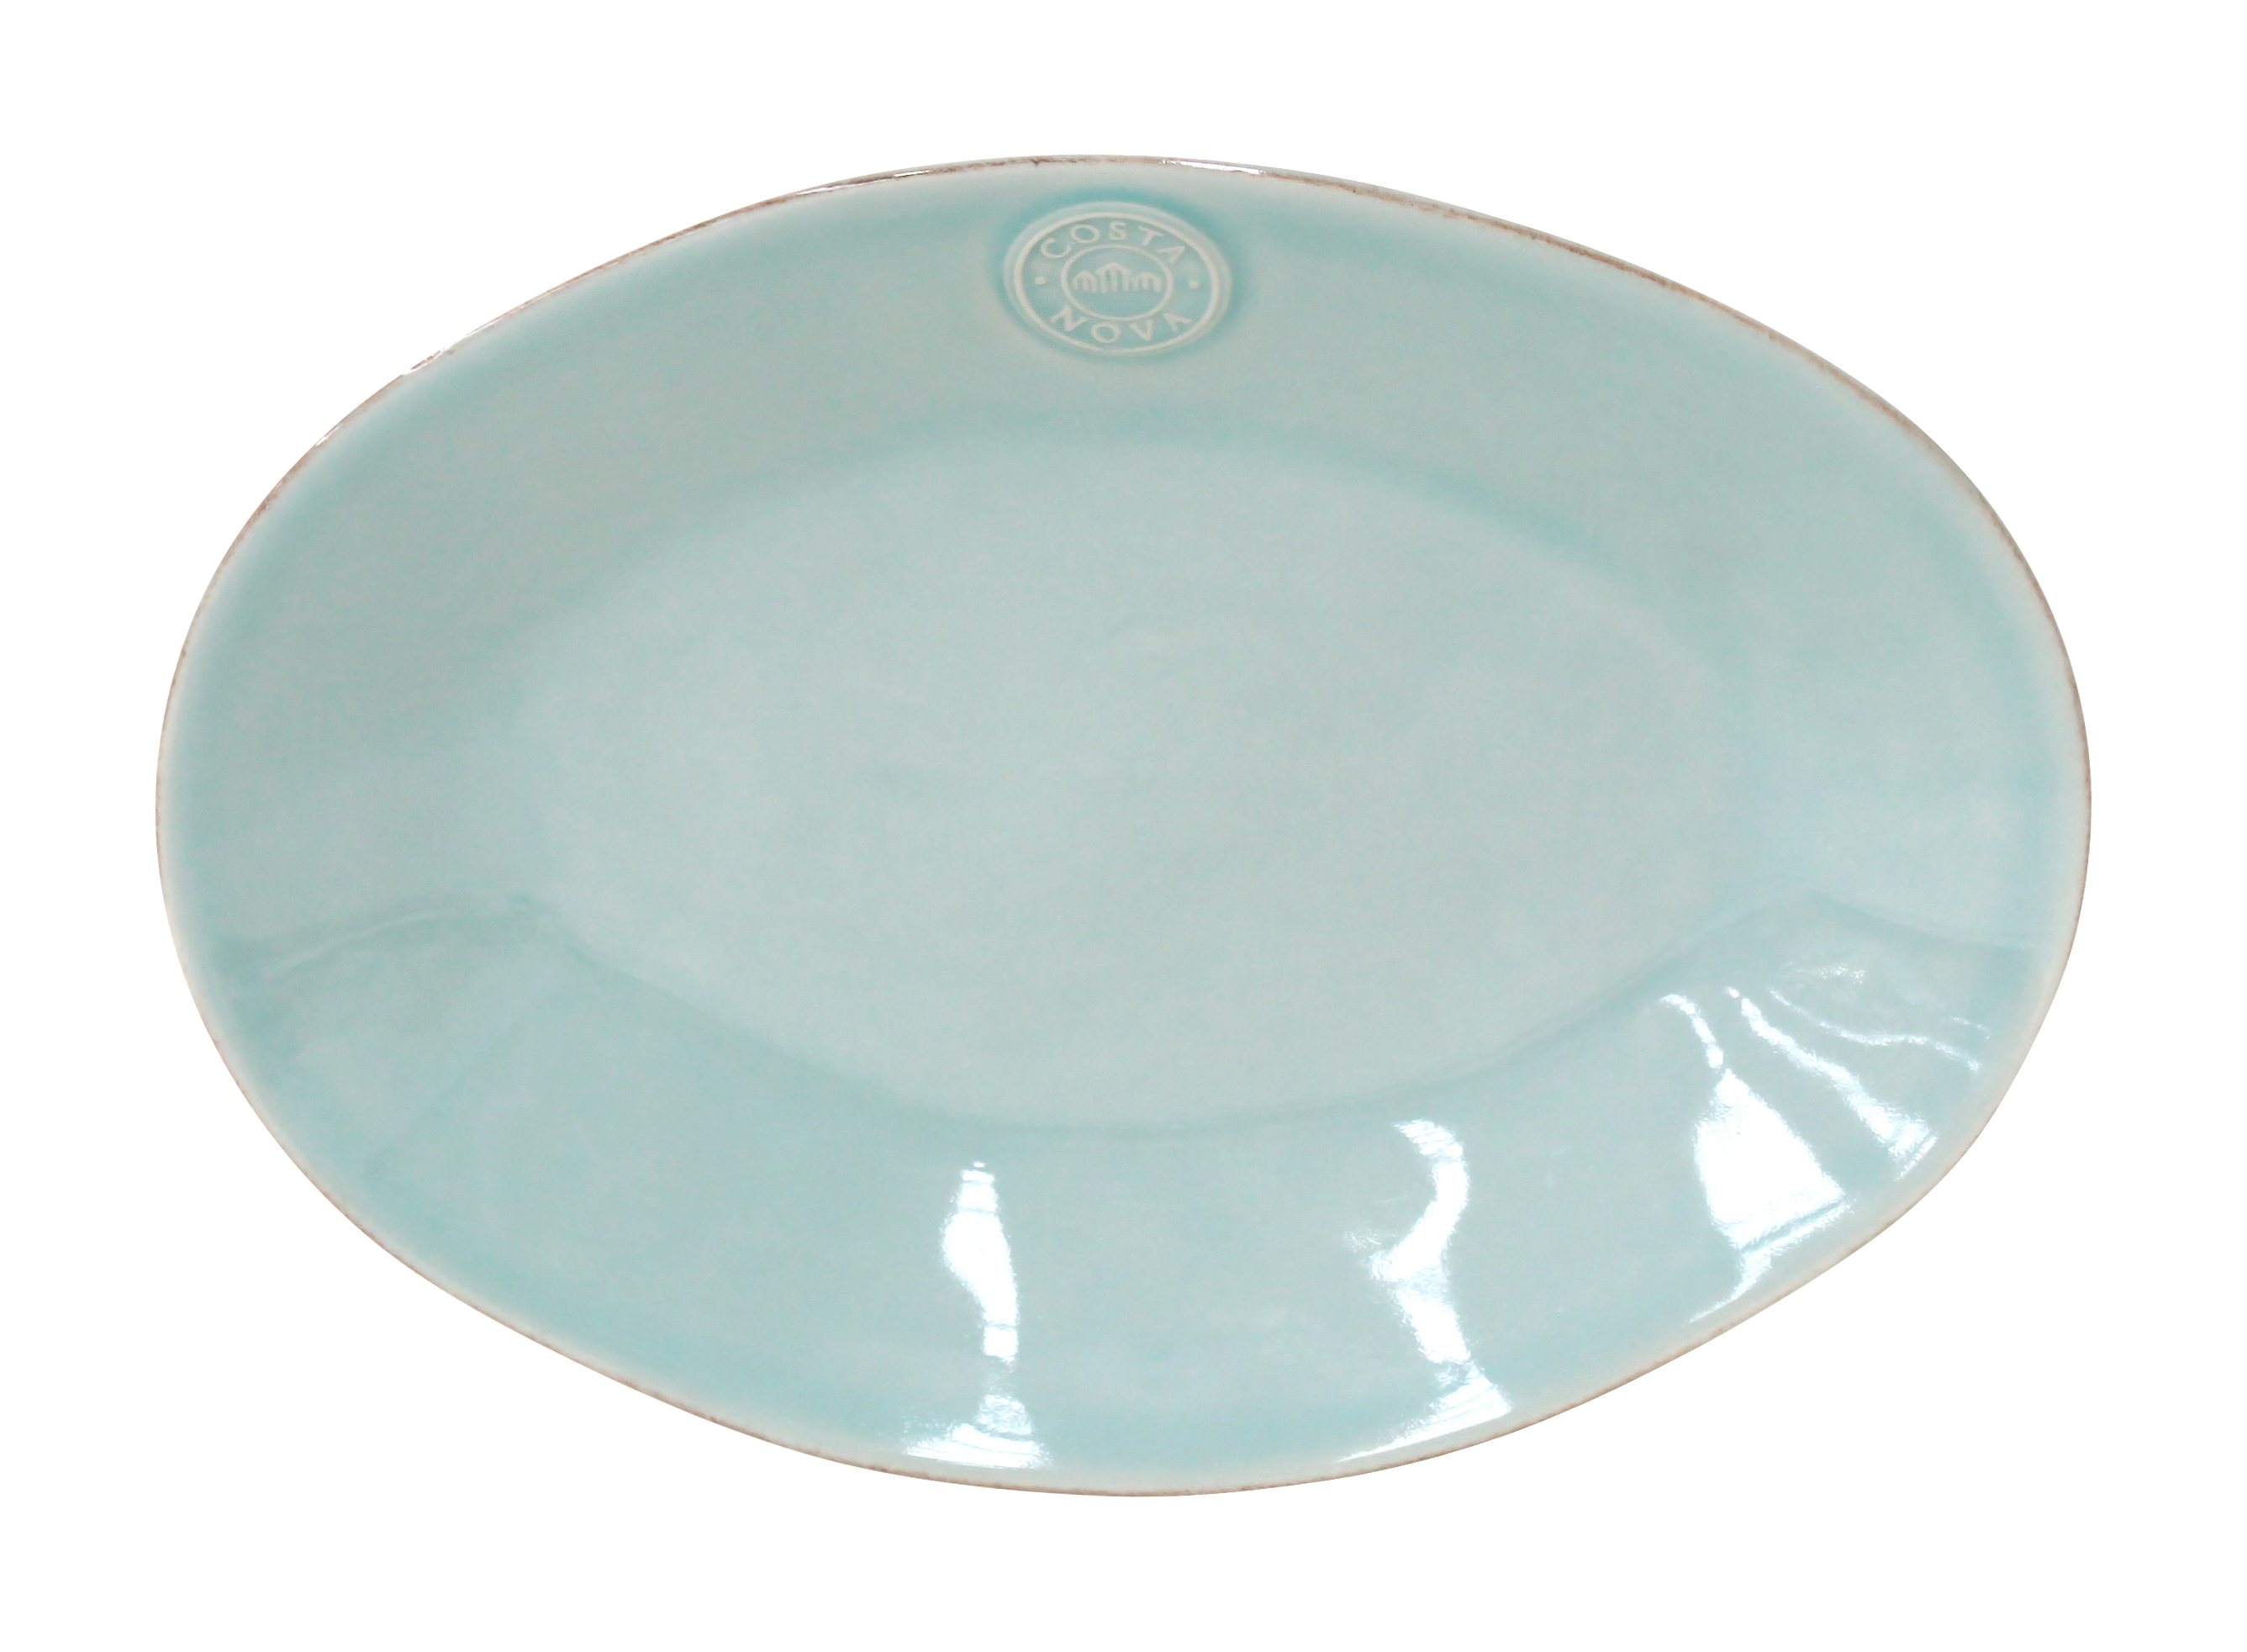 Nova Turquoise Oval Platter Medium 30cm Gift